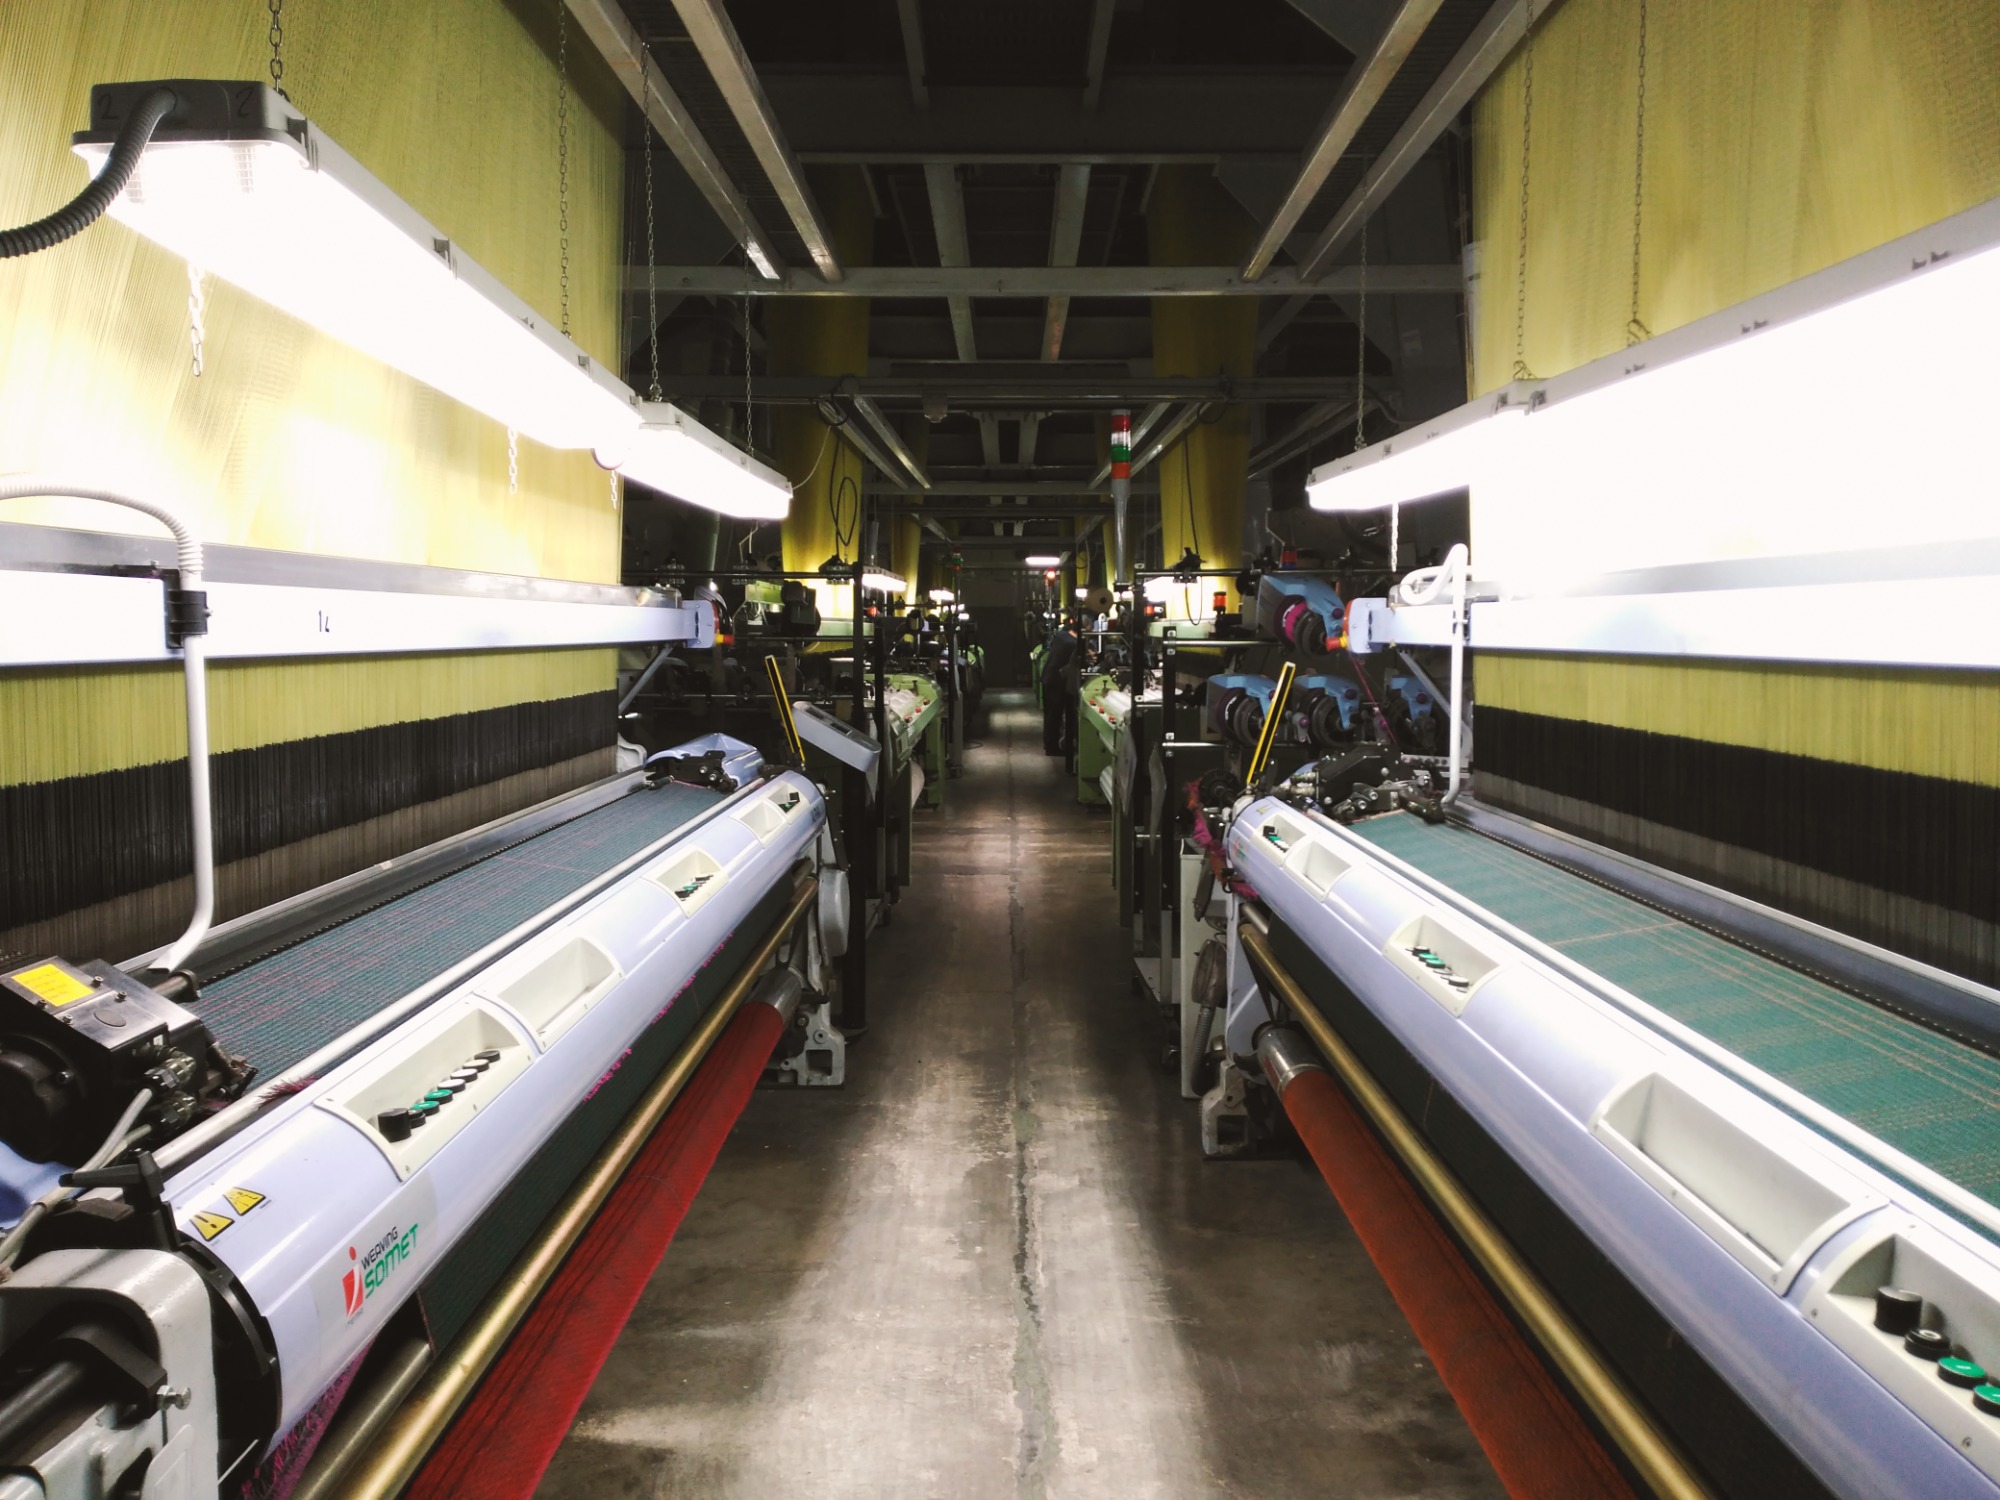 TEJEDURÍA + SERVICIO. El 100% de nuestra producción está fabricada en Agullent, España
29 telares jacquard - 1.500.000 ml/año - 350p/m